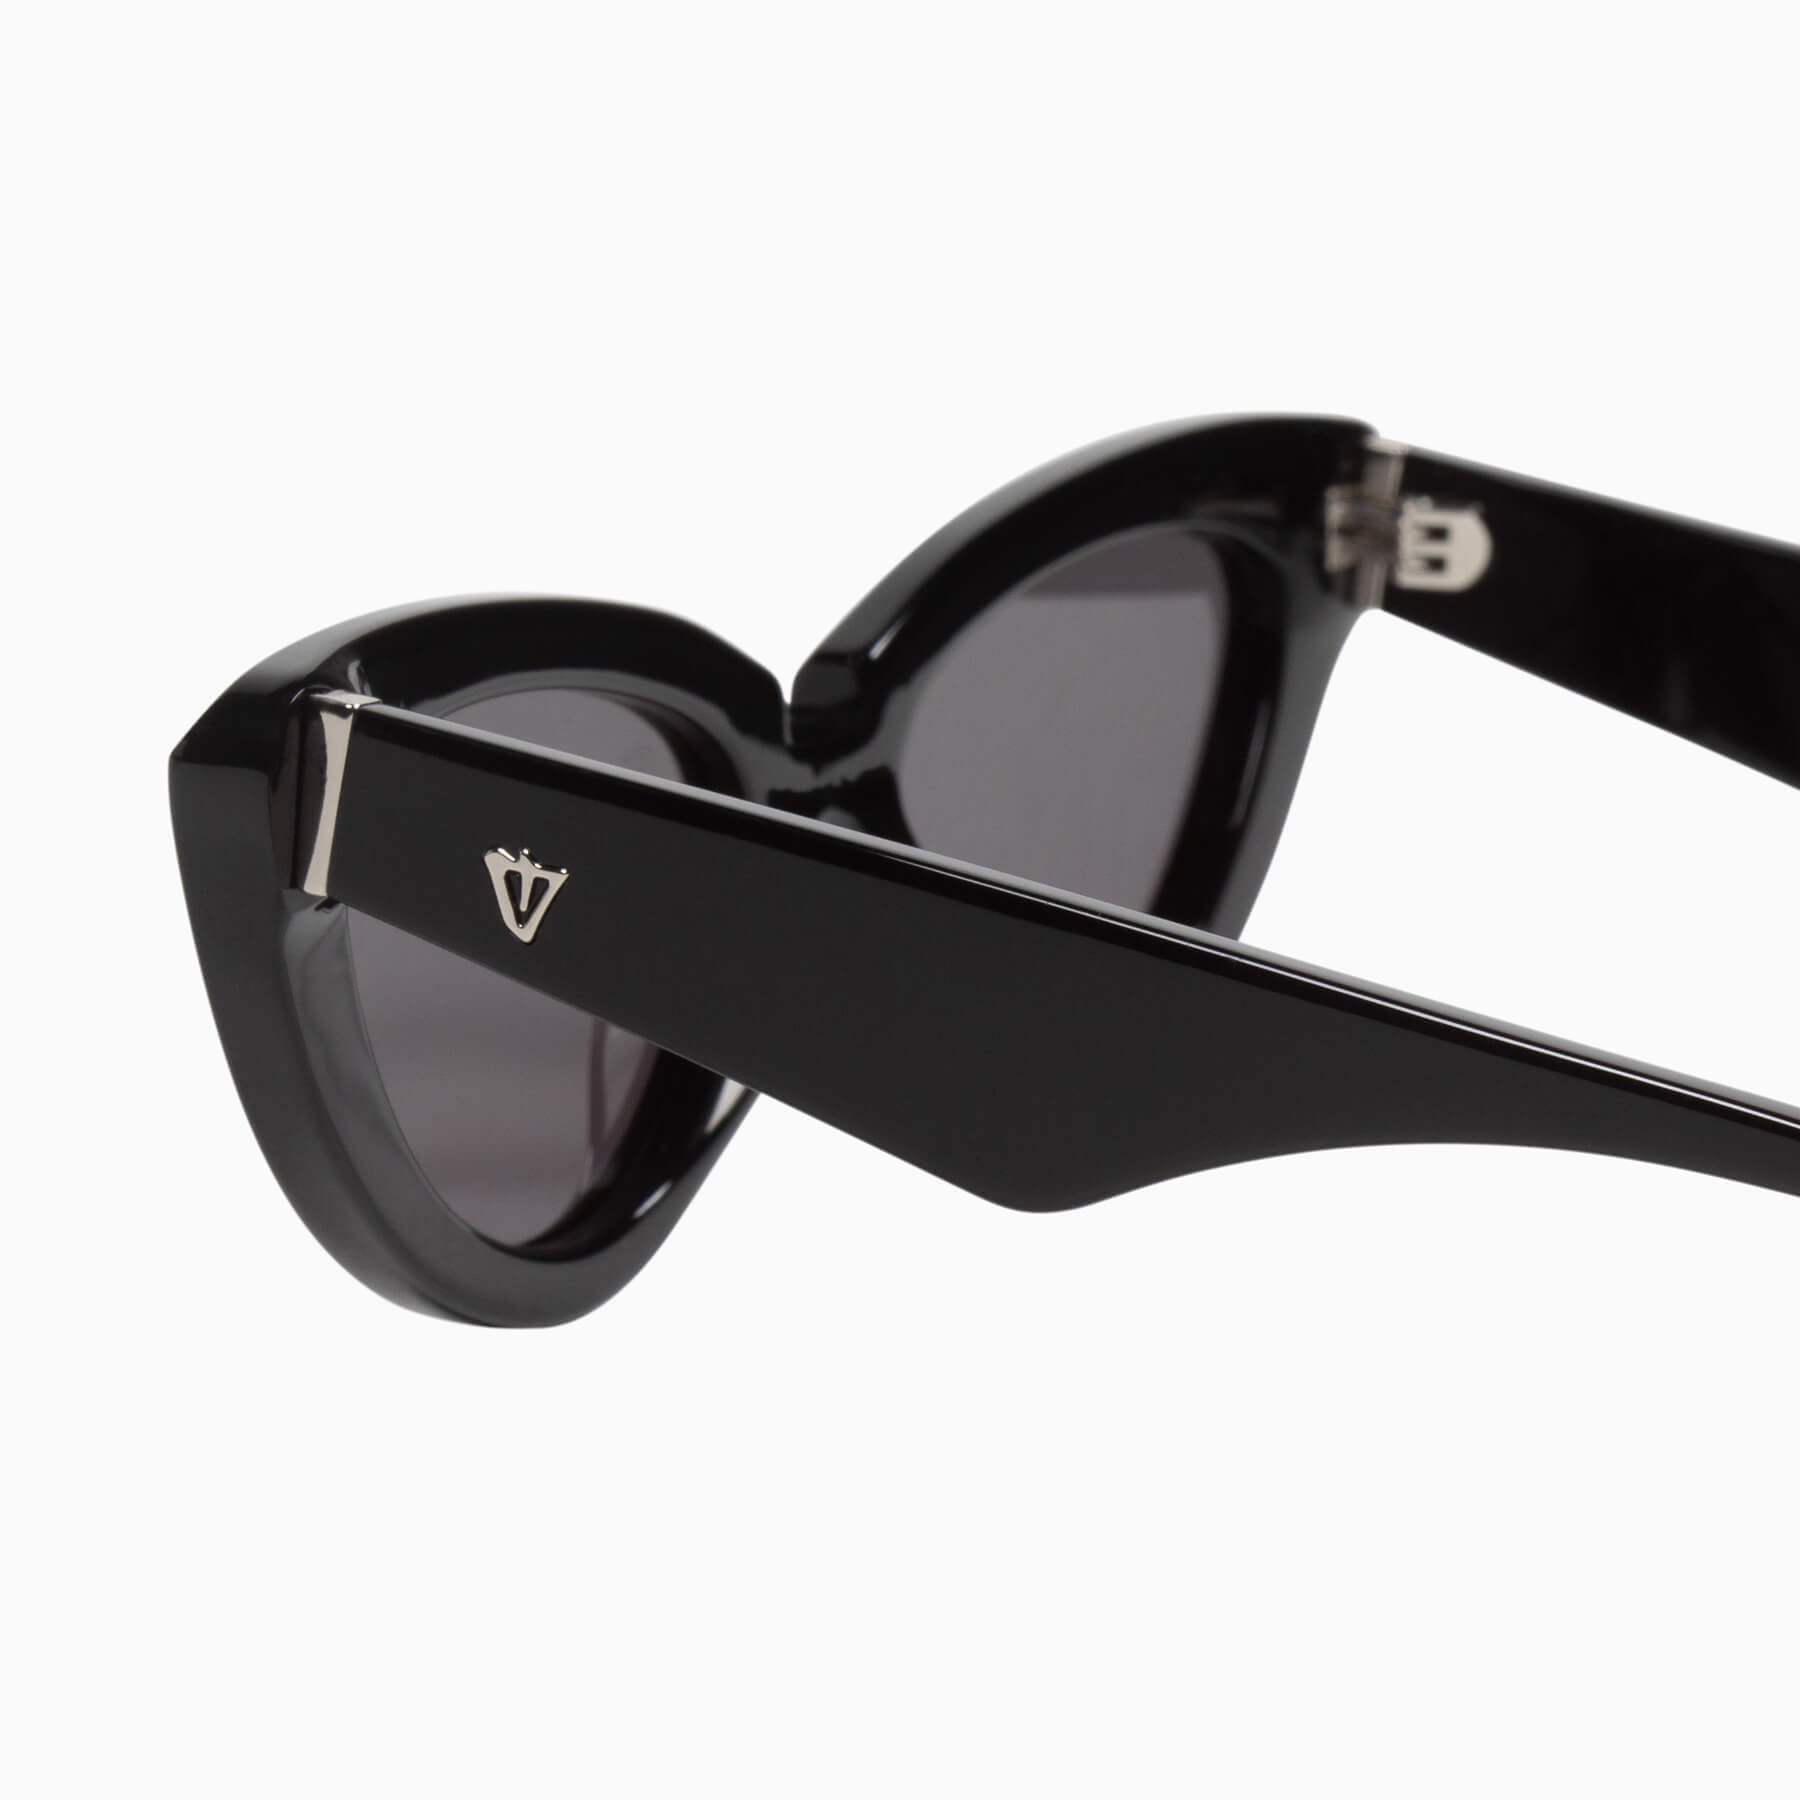 Dayze | Sunglasses - Gloss Black w. Silver Metal Trim / Black Lens